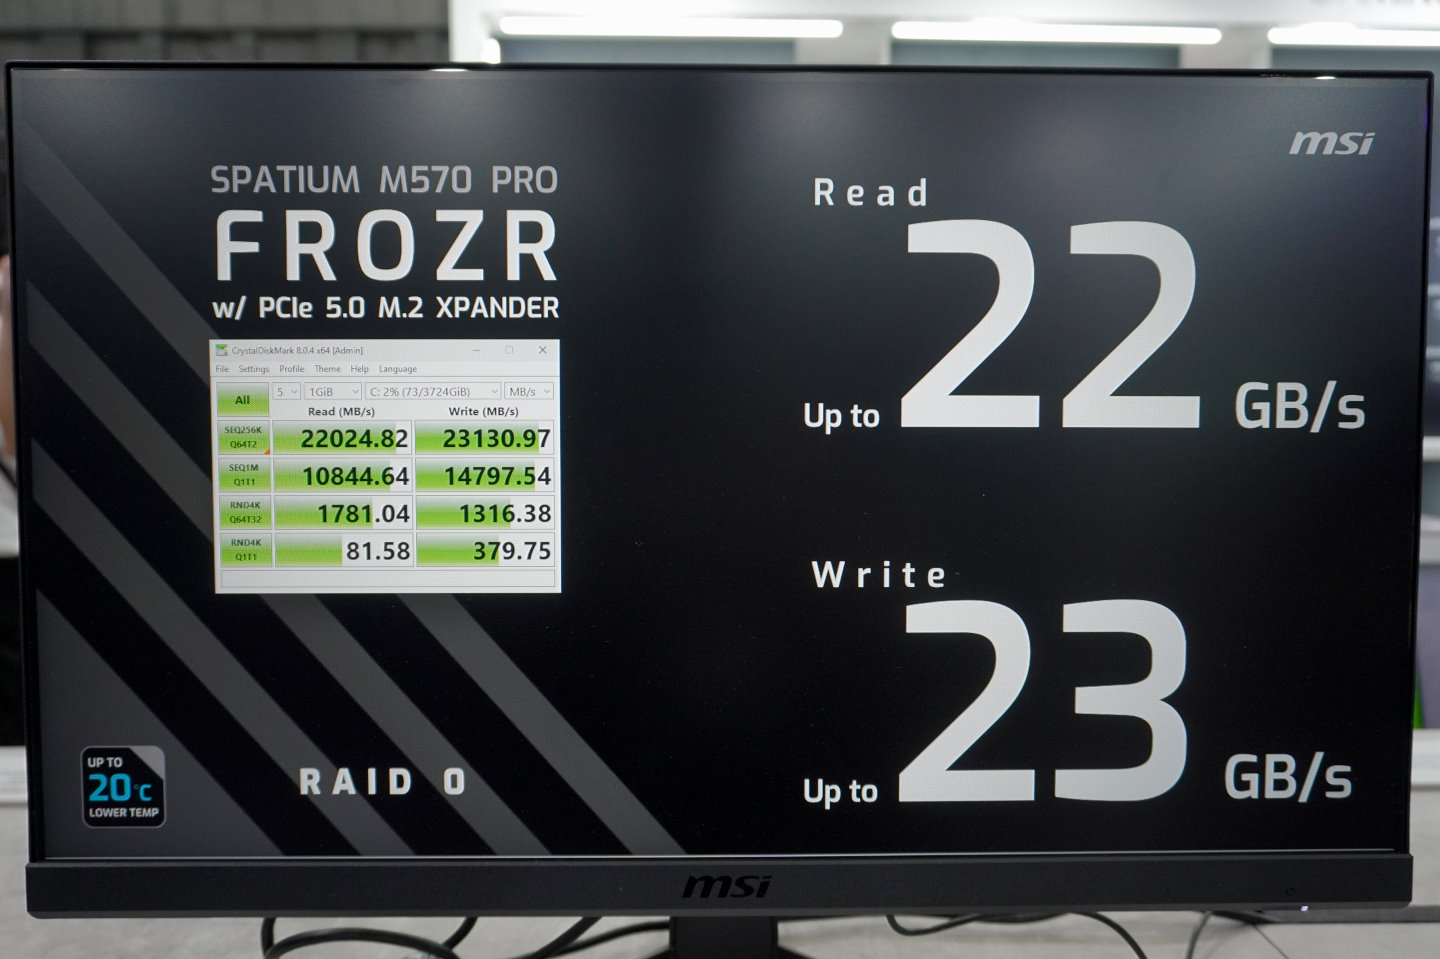 2組Spatium M570 Pro Frozr組成RAID 0磁碟陣列連續寫入速度高達23130.97 MB/s。